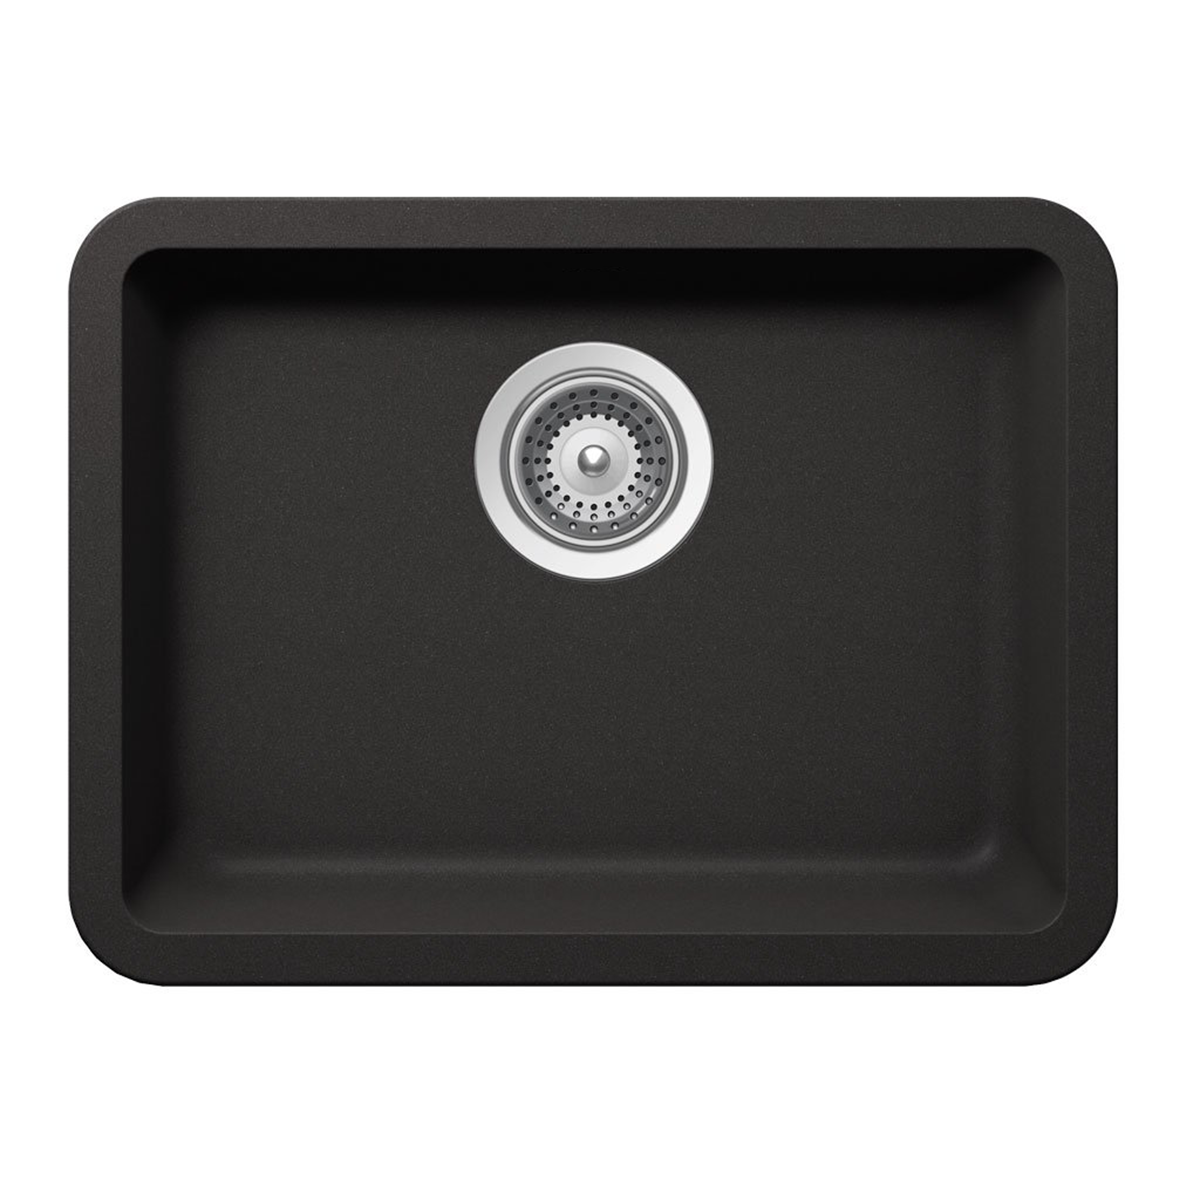 Pelican Int'l Crystallite Series PL-350 19 3/4" x 14 7/8" Onyx Granite Composite Undermount Kitchen Sink